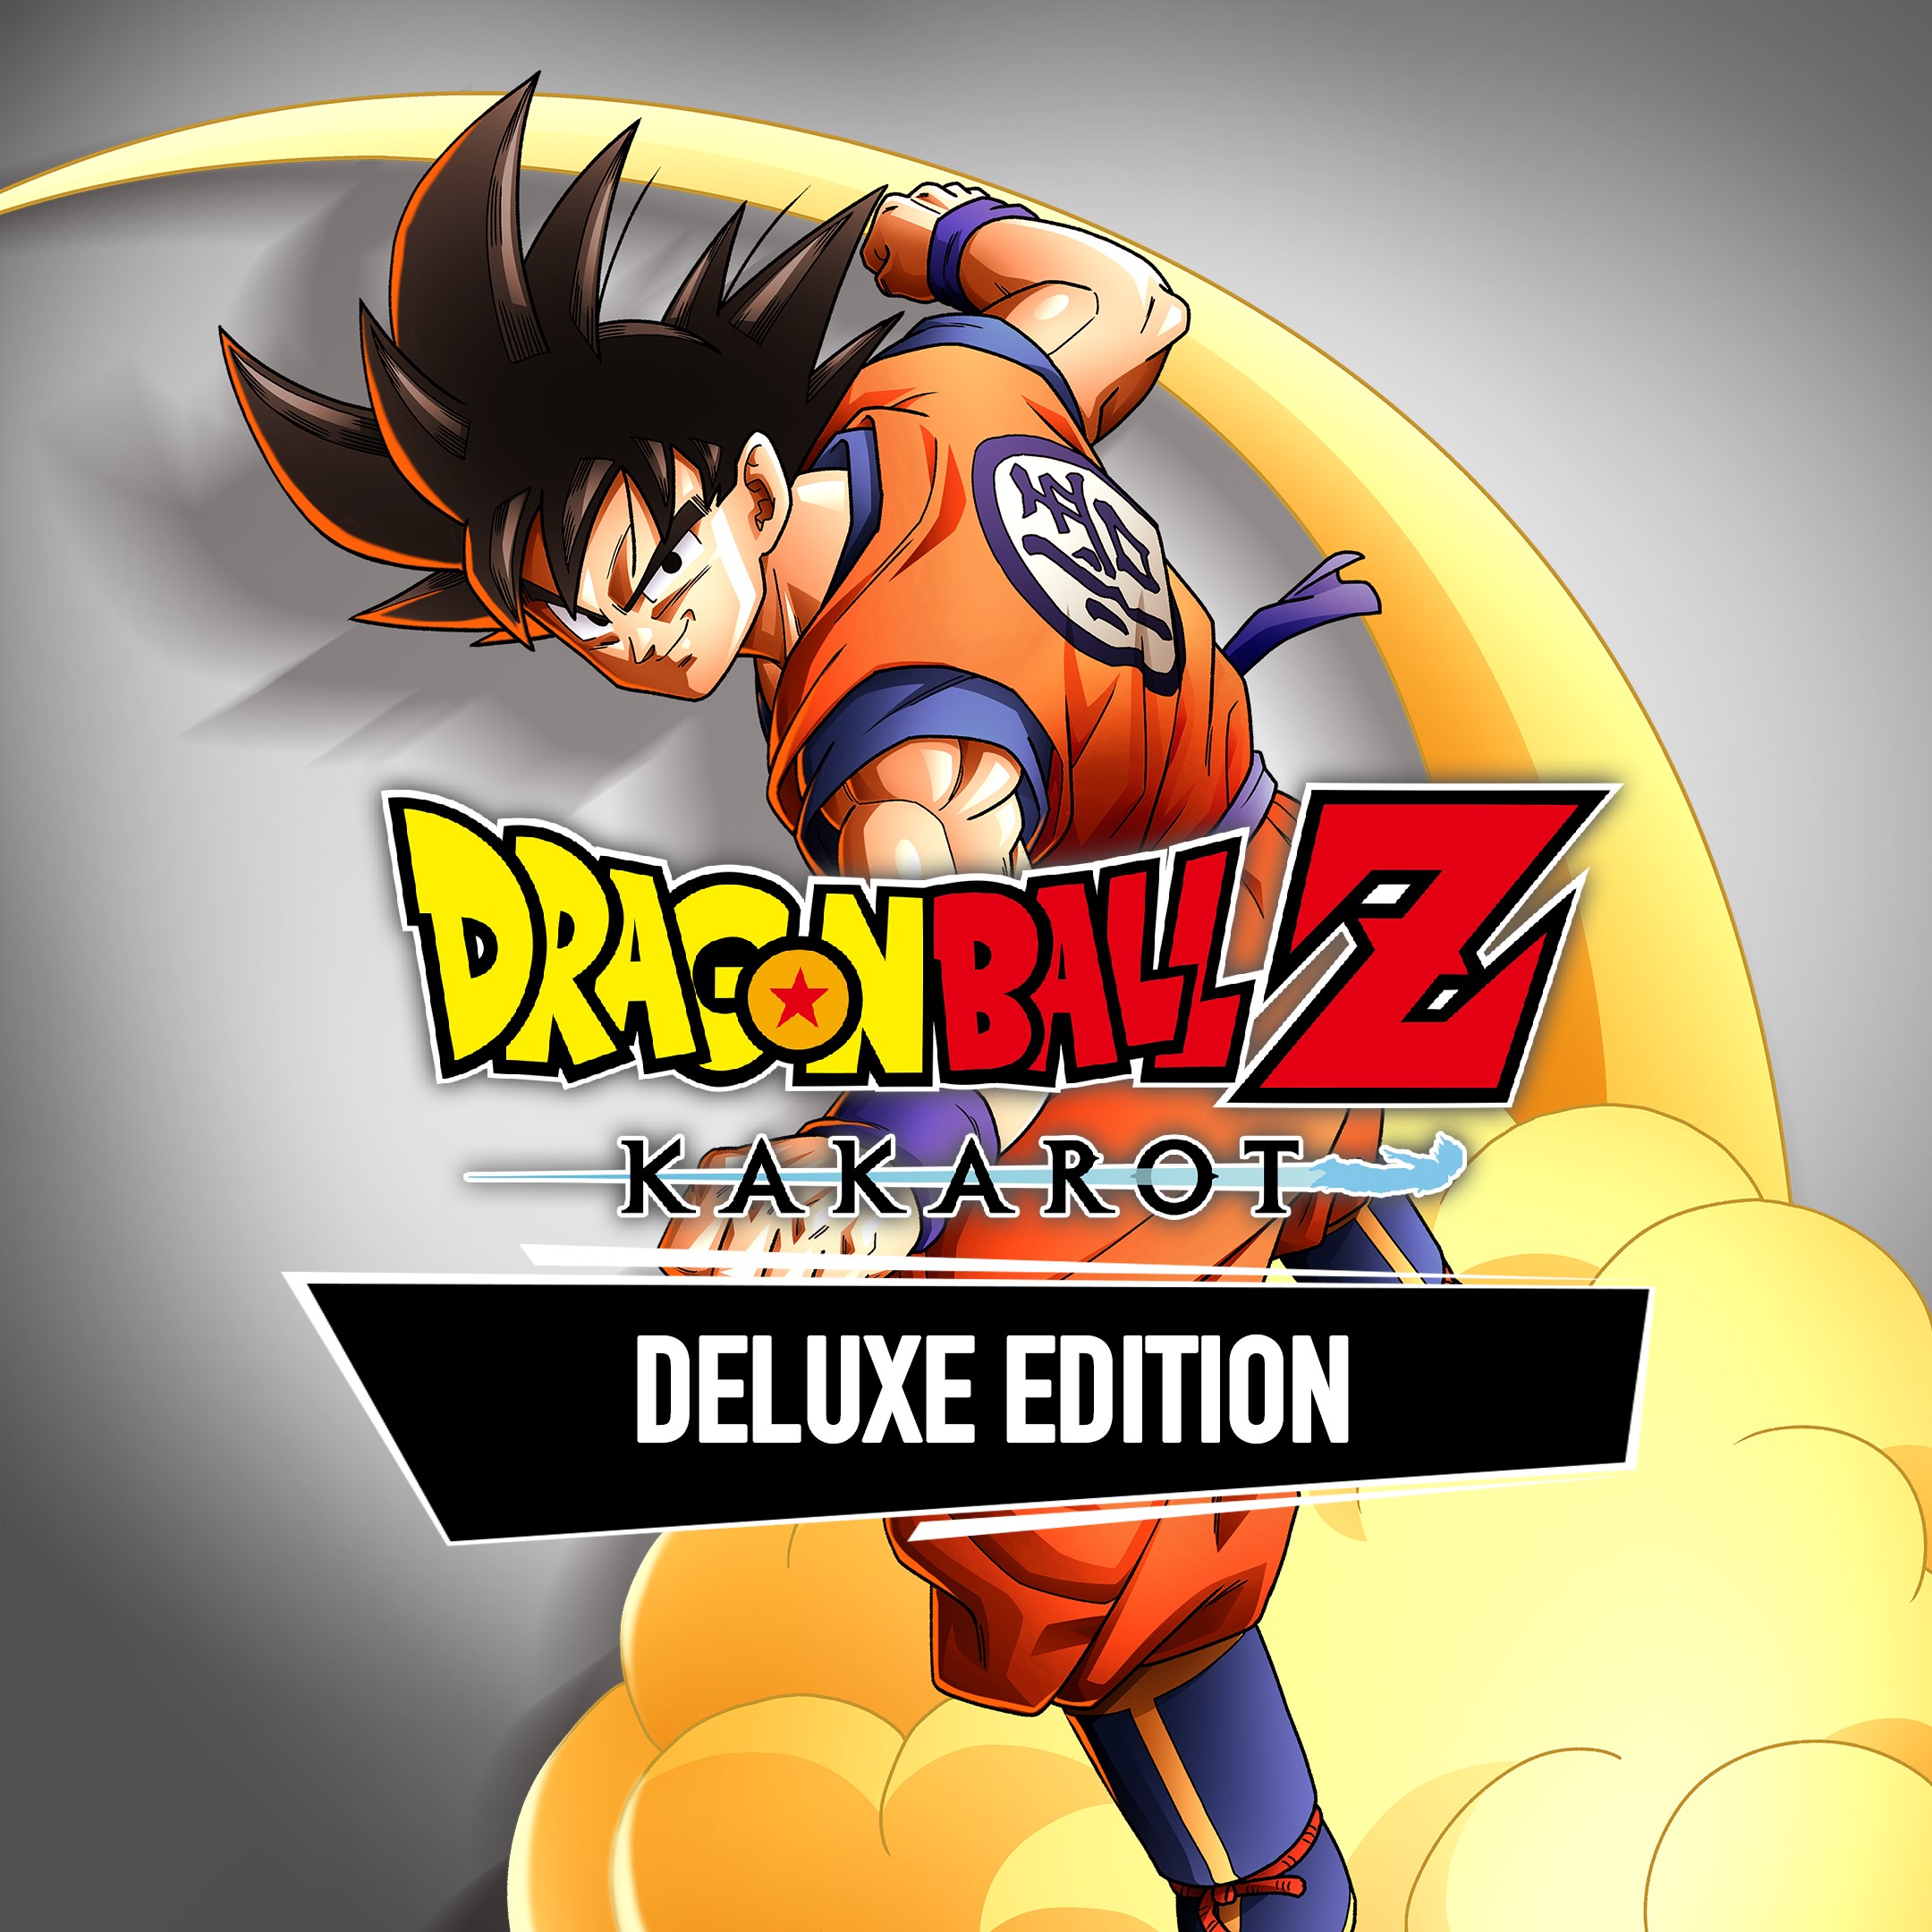 DRAGON BALL Z: KAKAROT Deluxe Edition Pre-Order Bundle